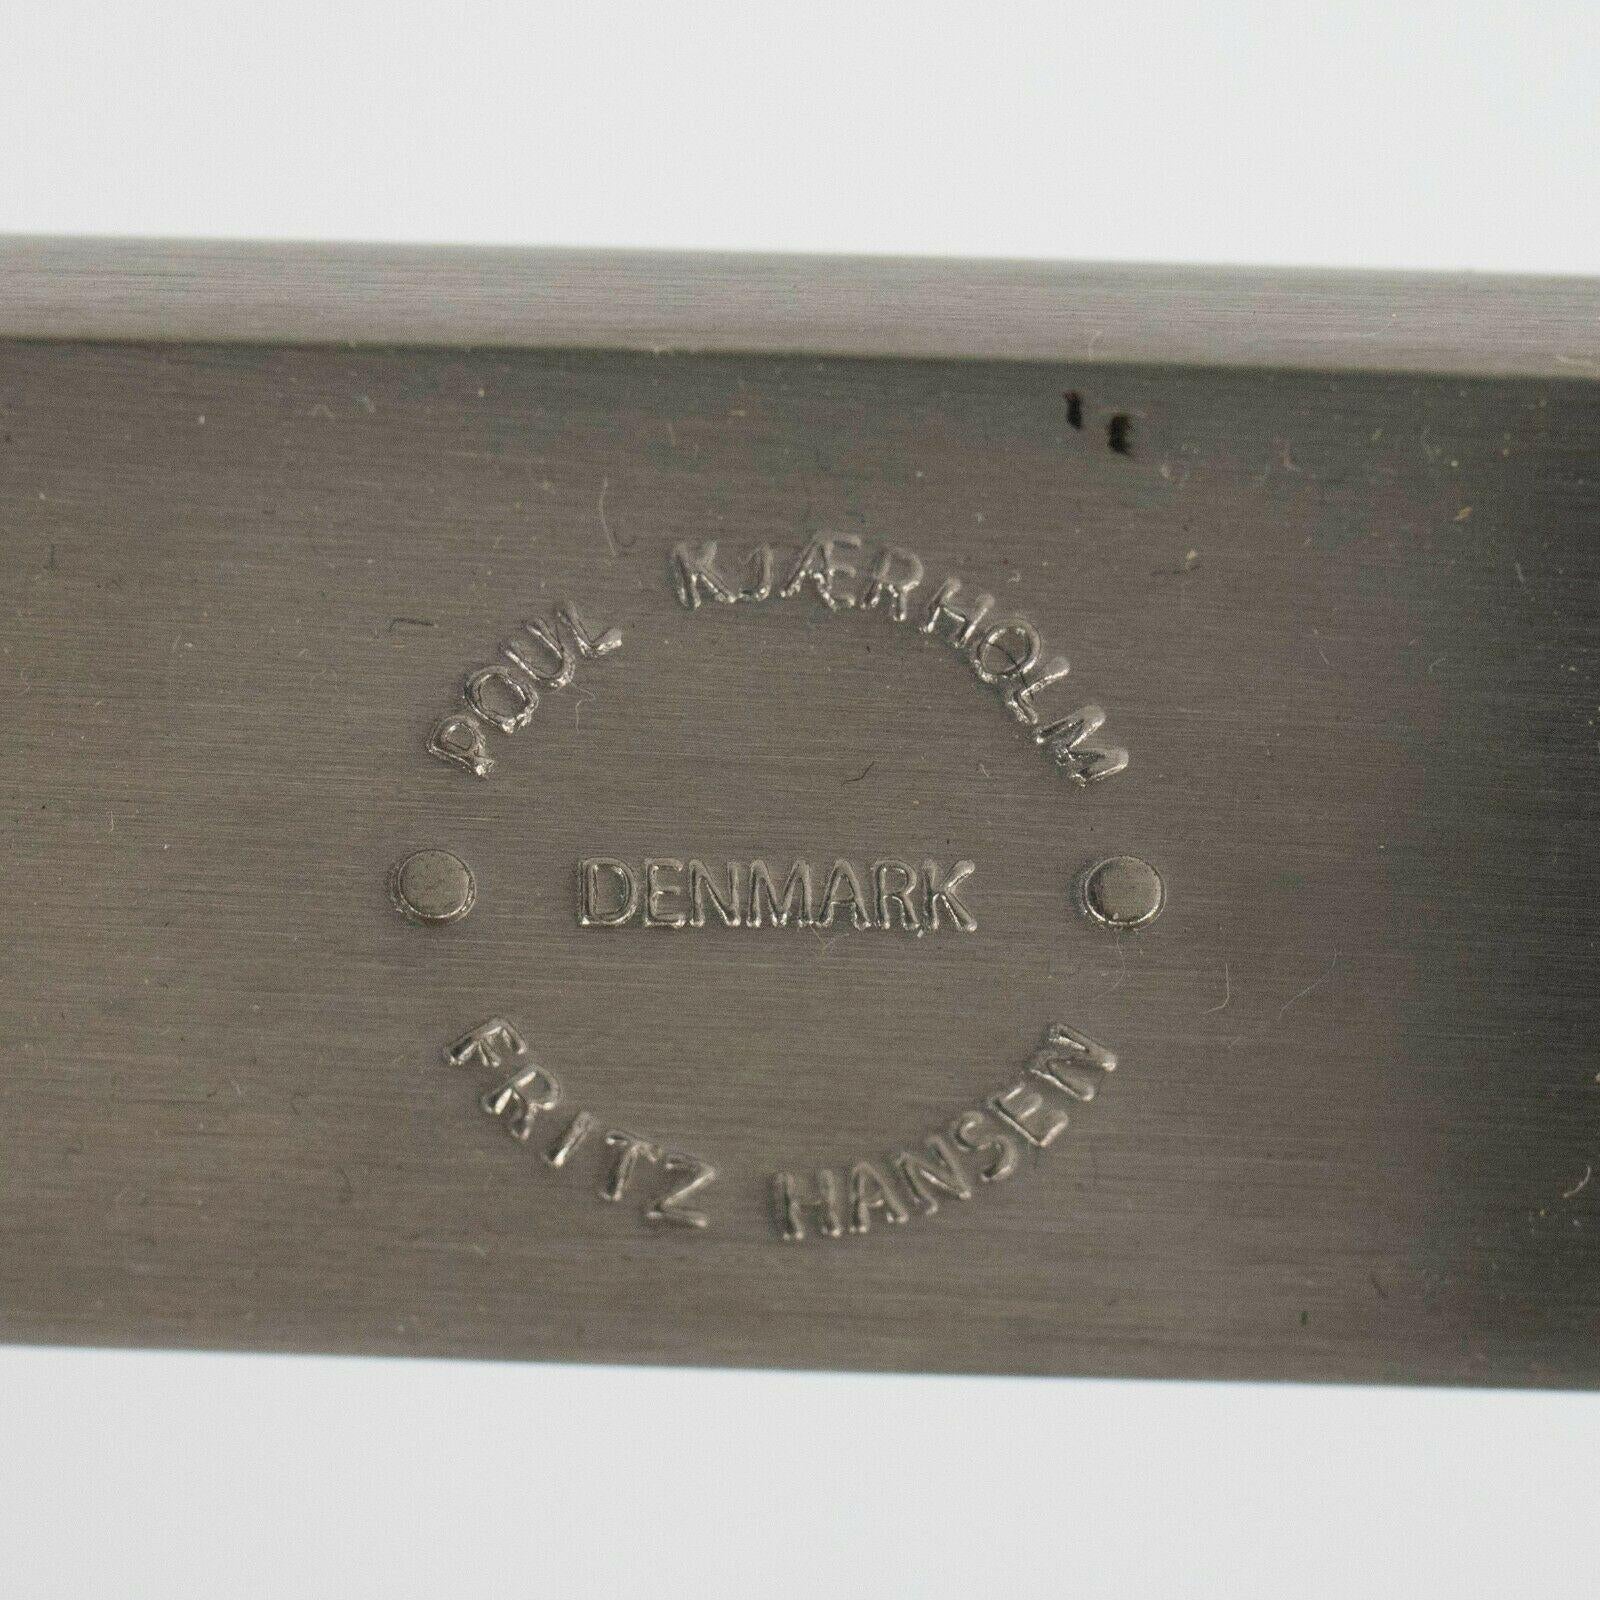 Nous proposons à la vente une table basse PK61 conçue par Poul Kjaerholm et produite par Fritz Hansen au Danemark. Il s'agit d'une œuvre emblématique de Kjaerholm avec des pieds décalés et un plateau en marbre joliment figuré. Cet exemple a été